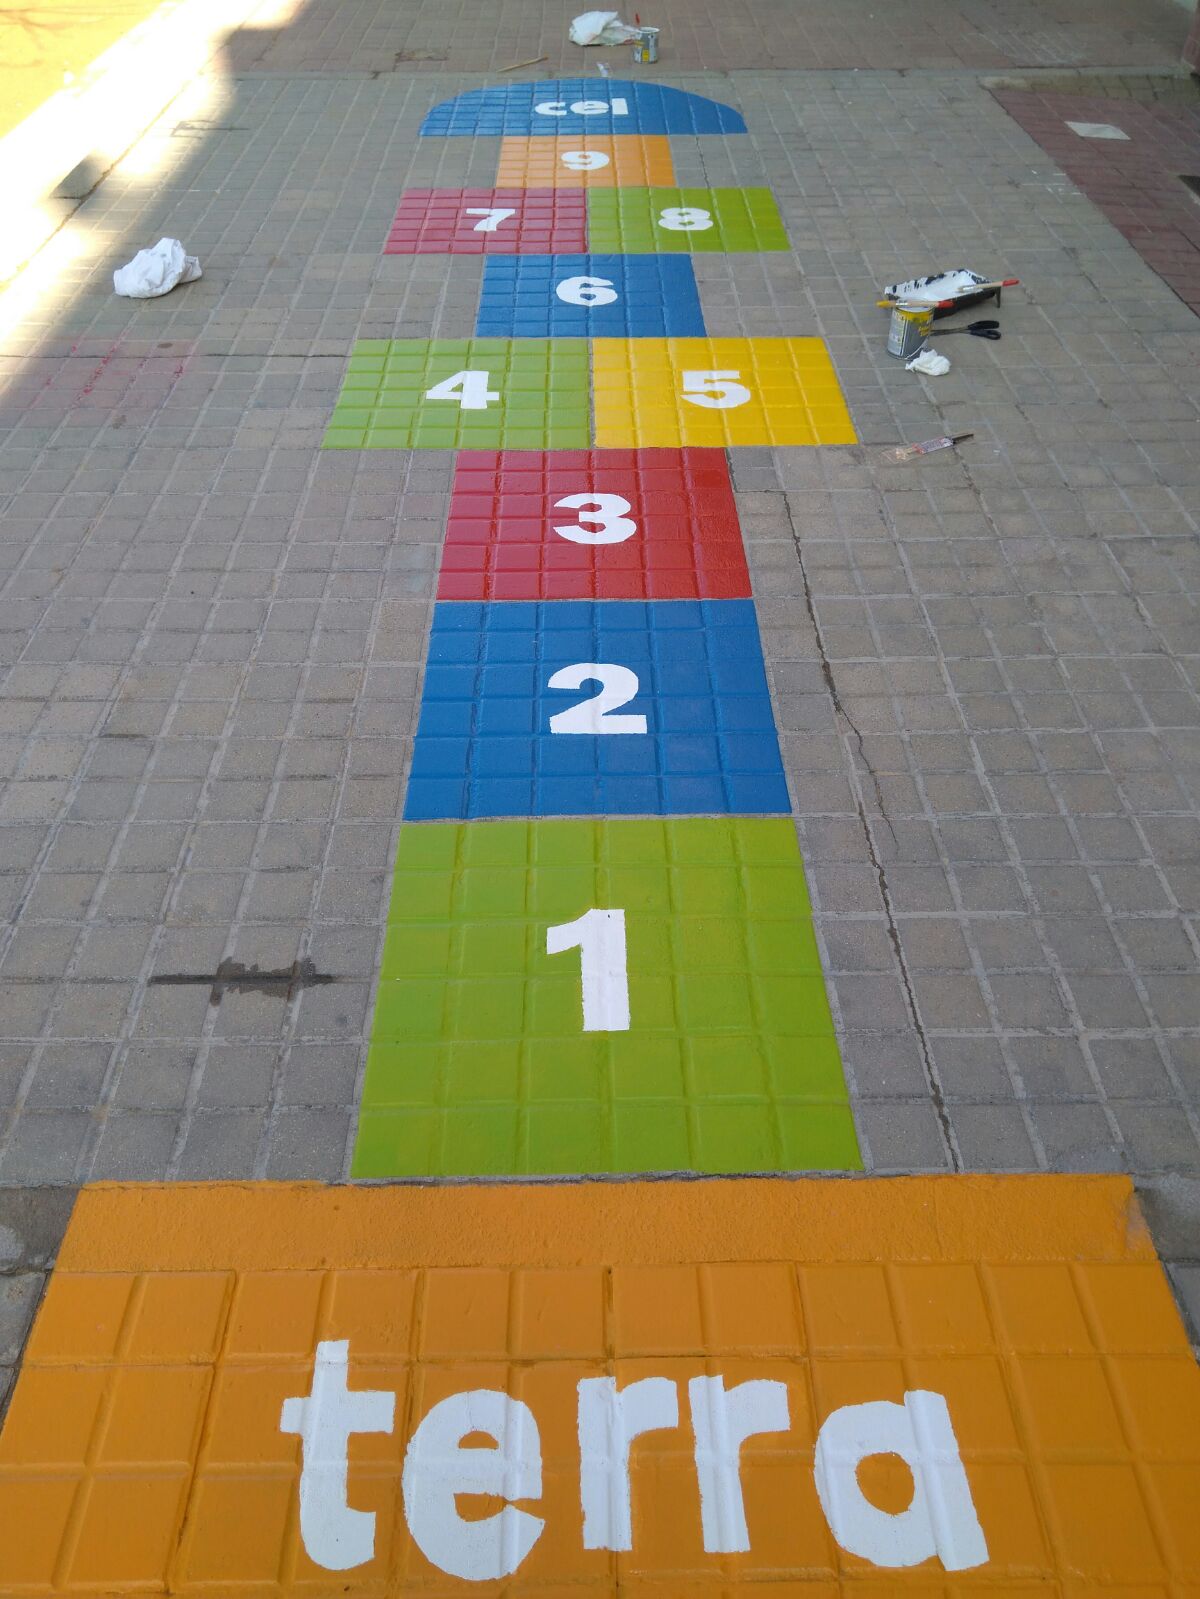 L'AMPA de l'escola Salvador Llobet, de Granollers, pinta jocs al pati | EL9NOU.CAT